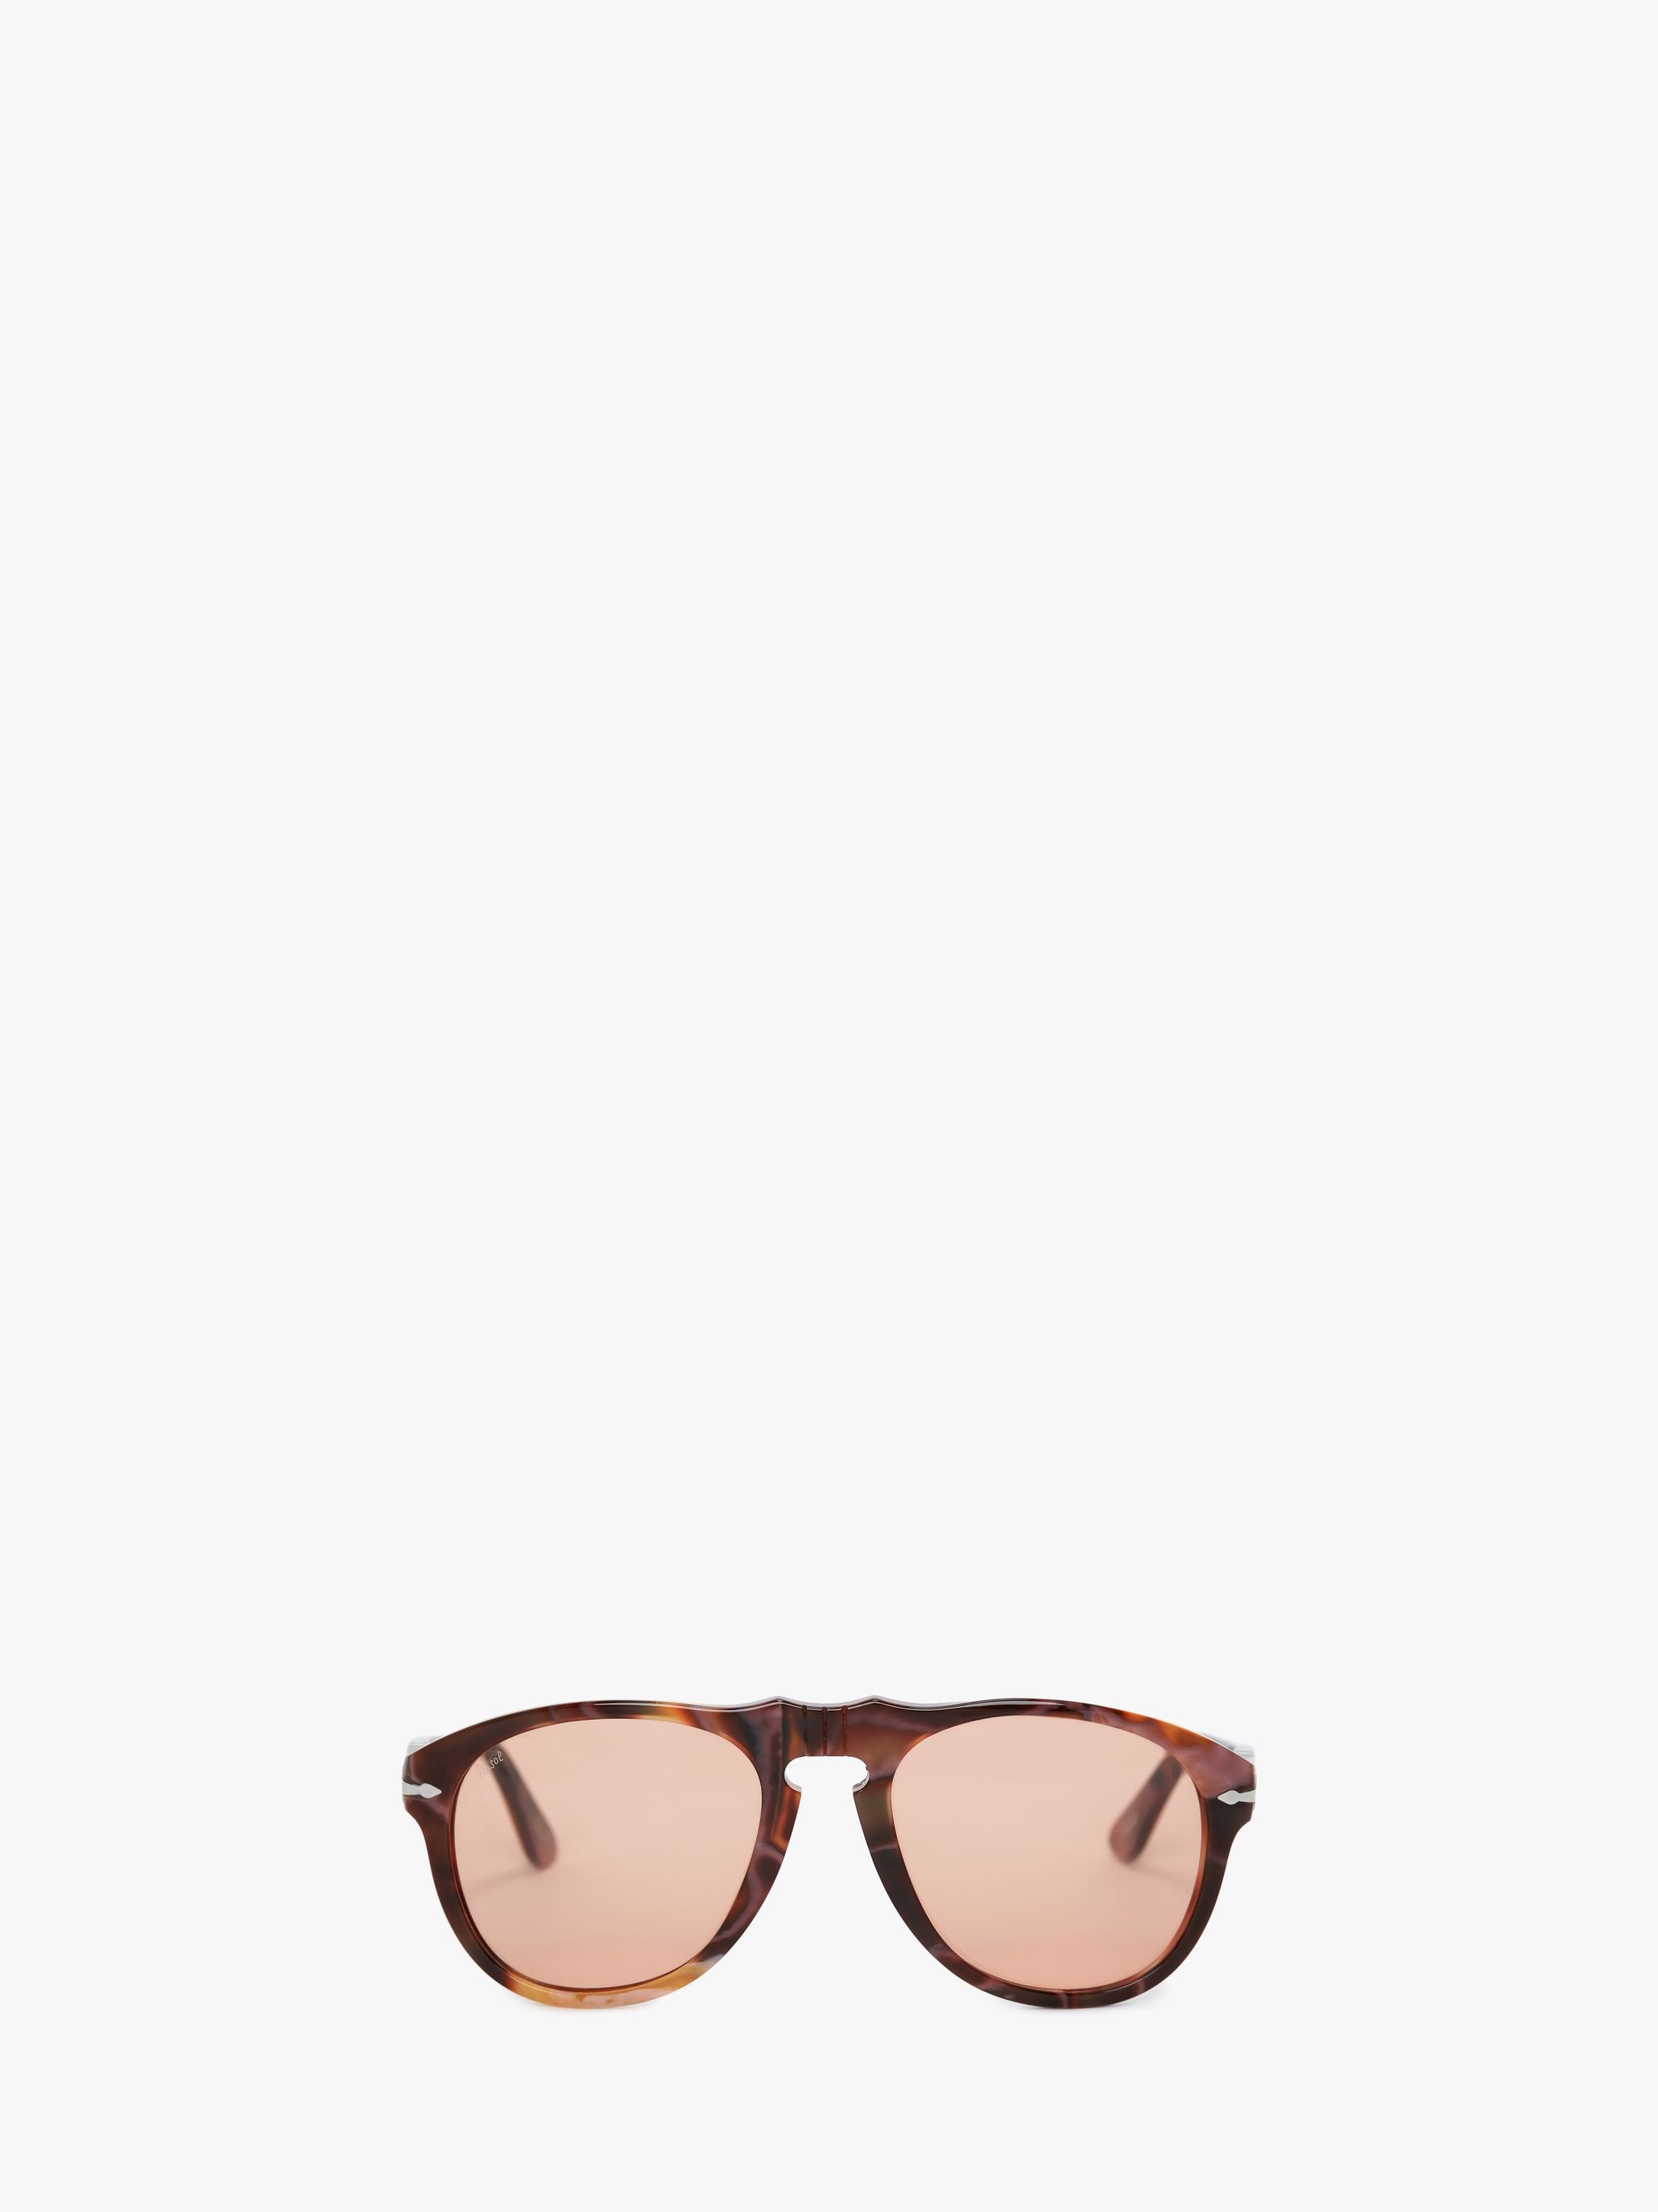 Солнцезащитные очки - авиатор JW Anderson, коричневый солнцезащитные очки carrera авиаторы оправа металл